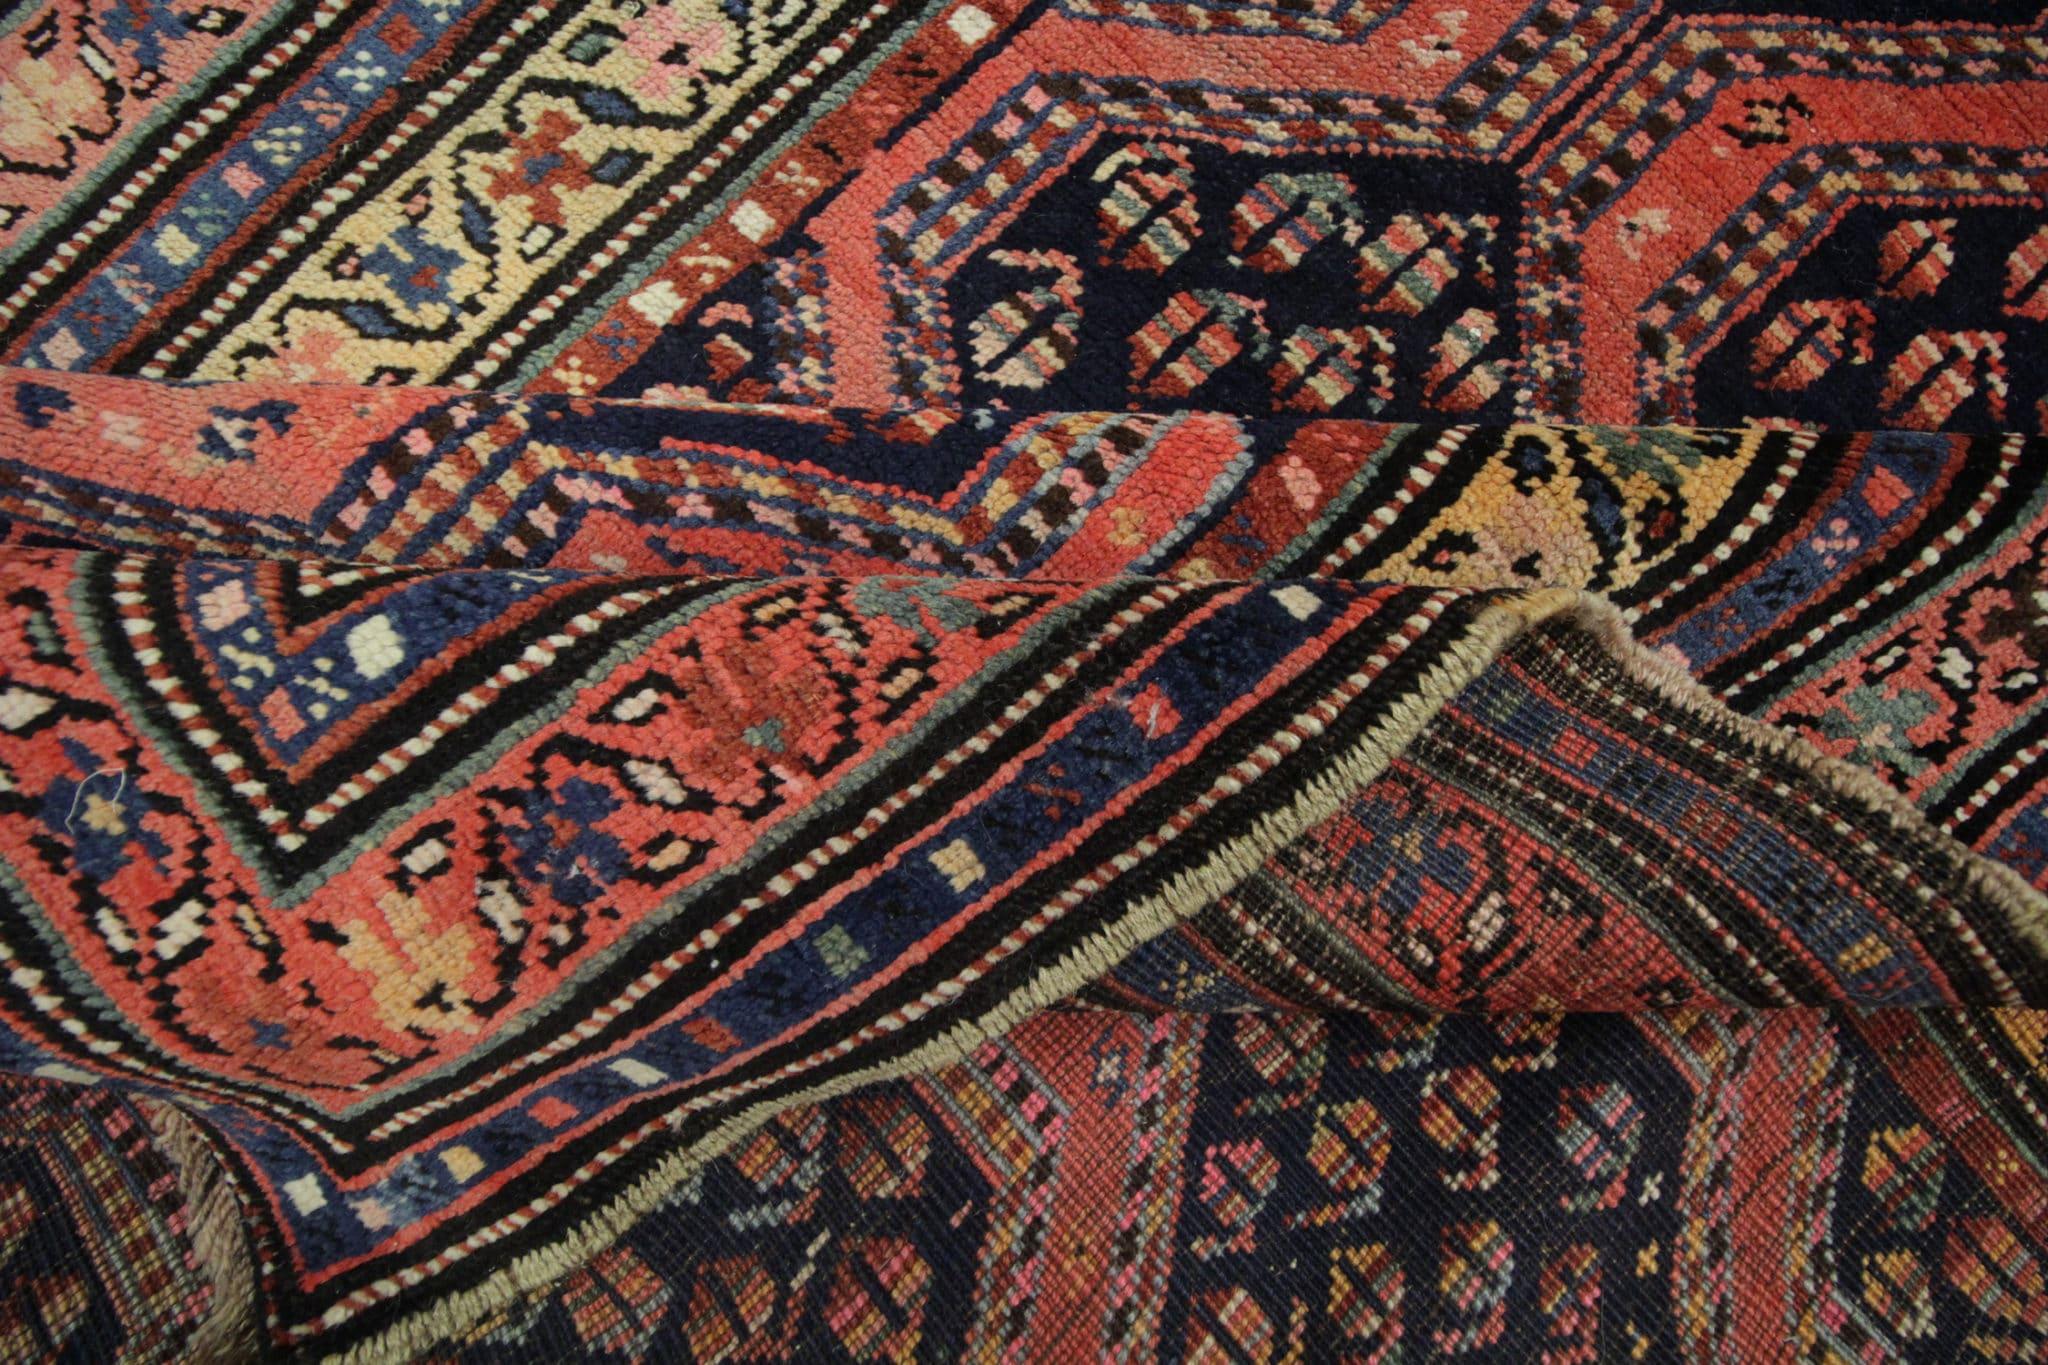 Tauchen Sie ein in die reiche Geschichte und den zeitlosen Charme unseres seltenen antiken kaukasischen Teppichs. Dieses exquisite Stück besticht durch sein fesselndes Geflecht, das sorgfältig von Hand geknüpft wurde. Die in den späten 1890er Jahren